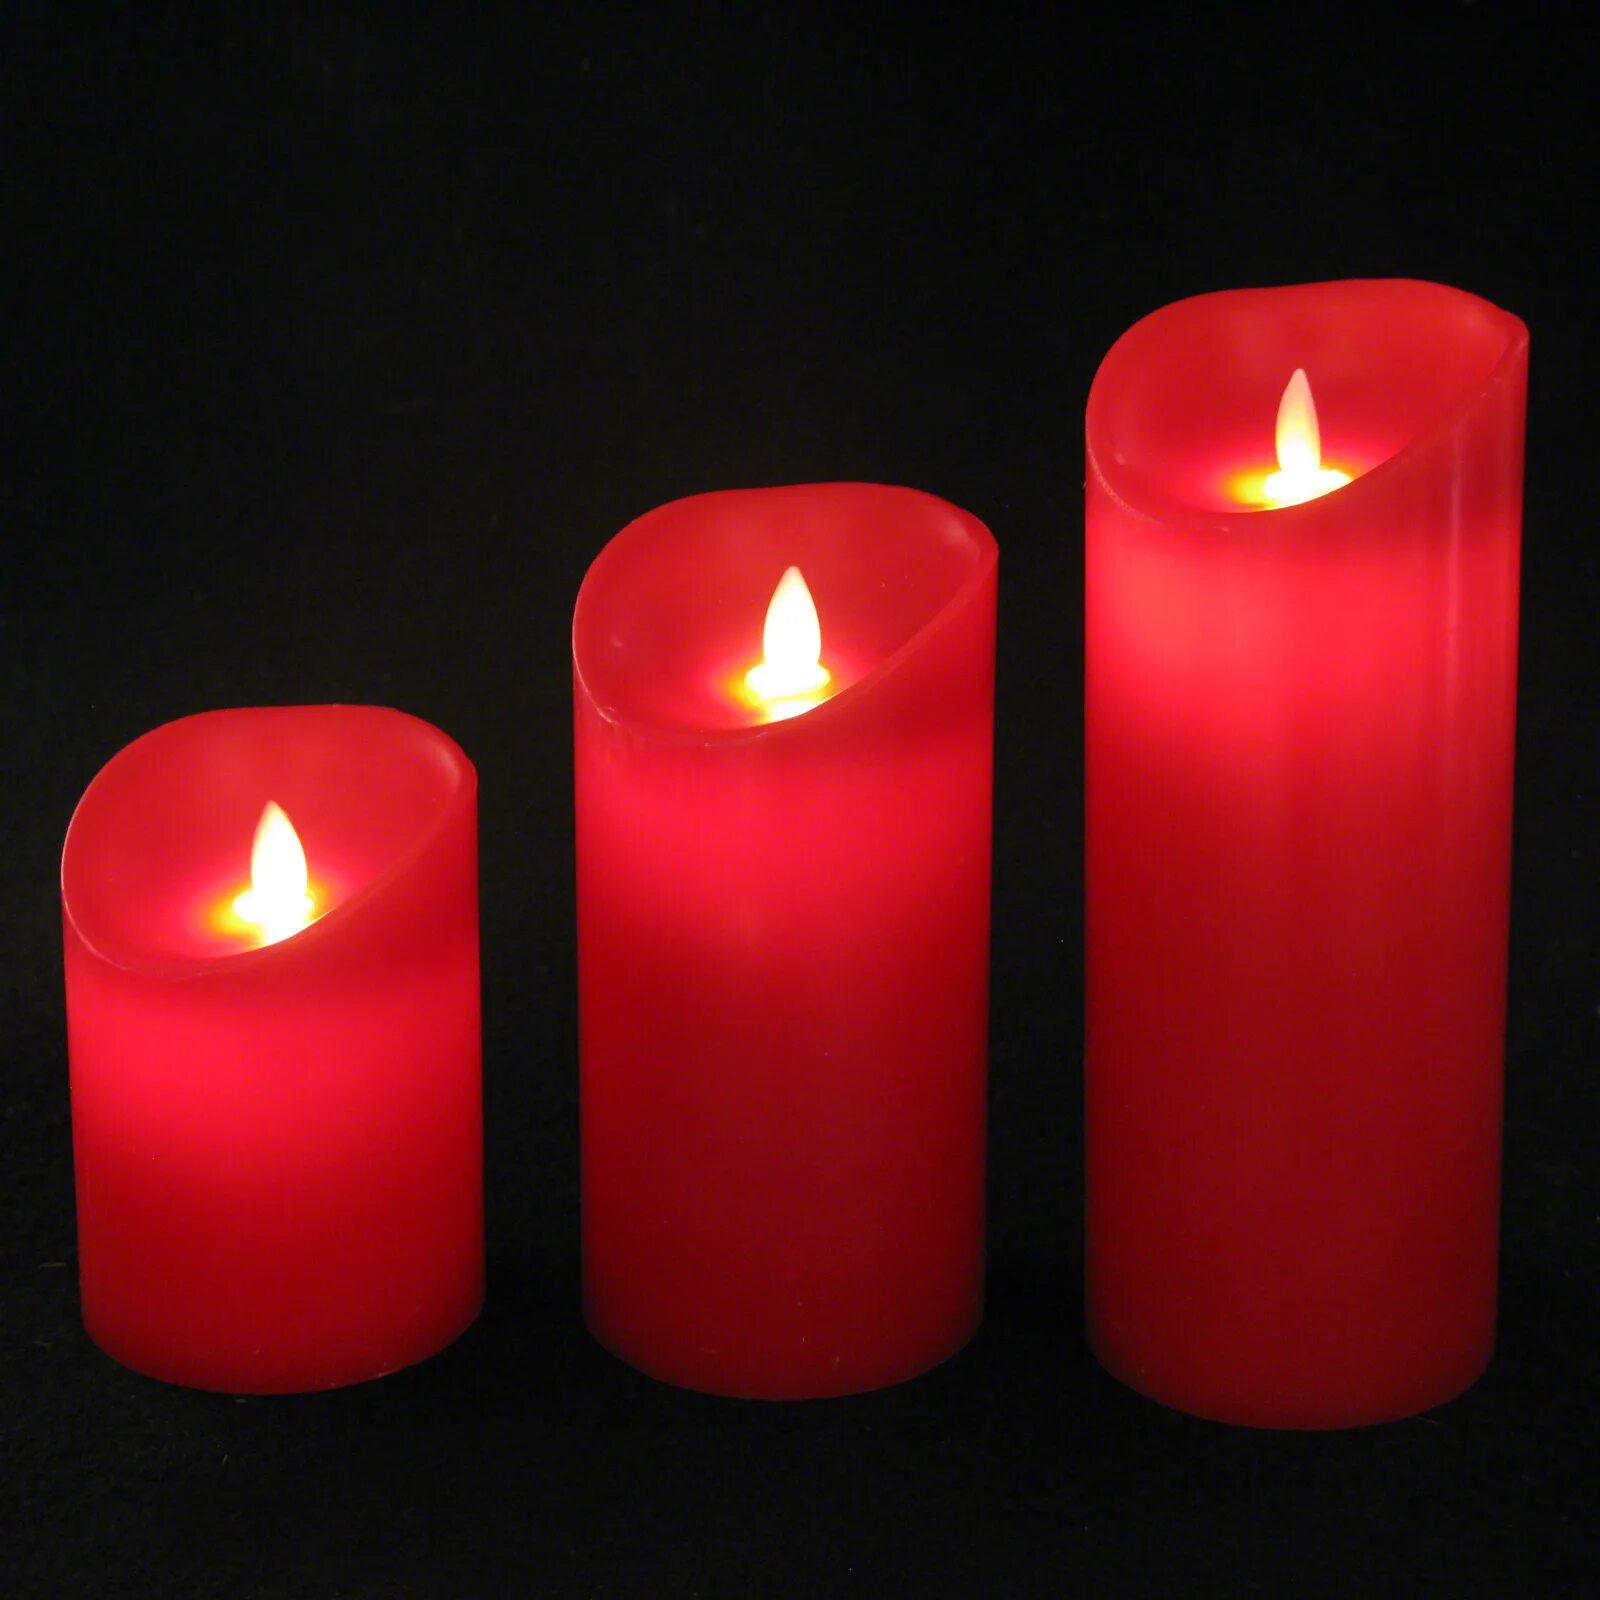 Красная свеча. Красивые красные свечи. Свечи на батарейках красные. Огромные красные свечи. Красные свечи хорошие